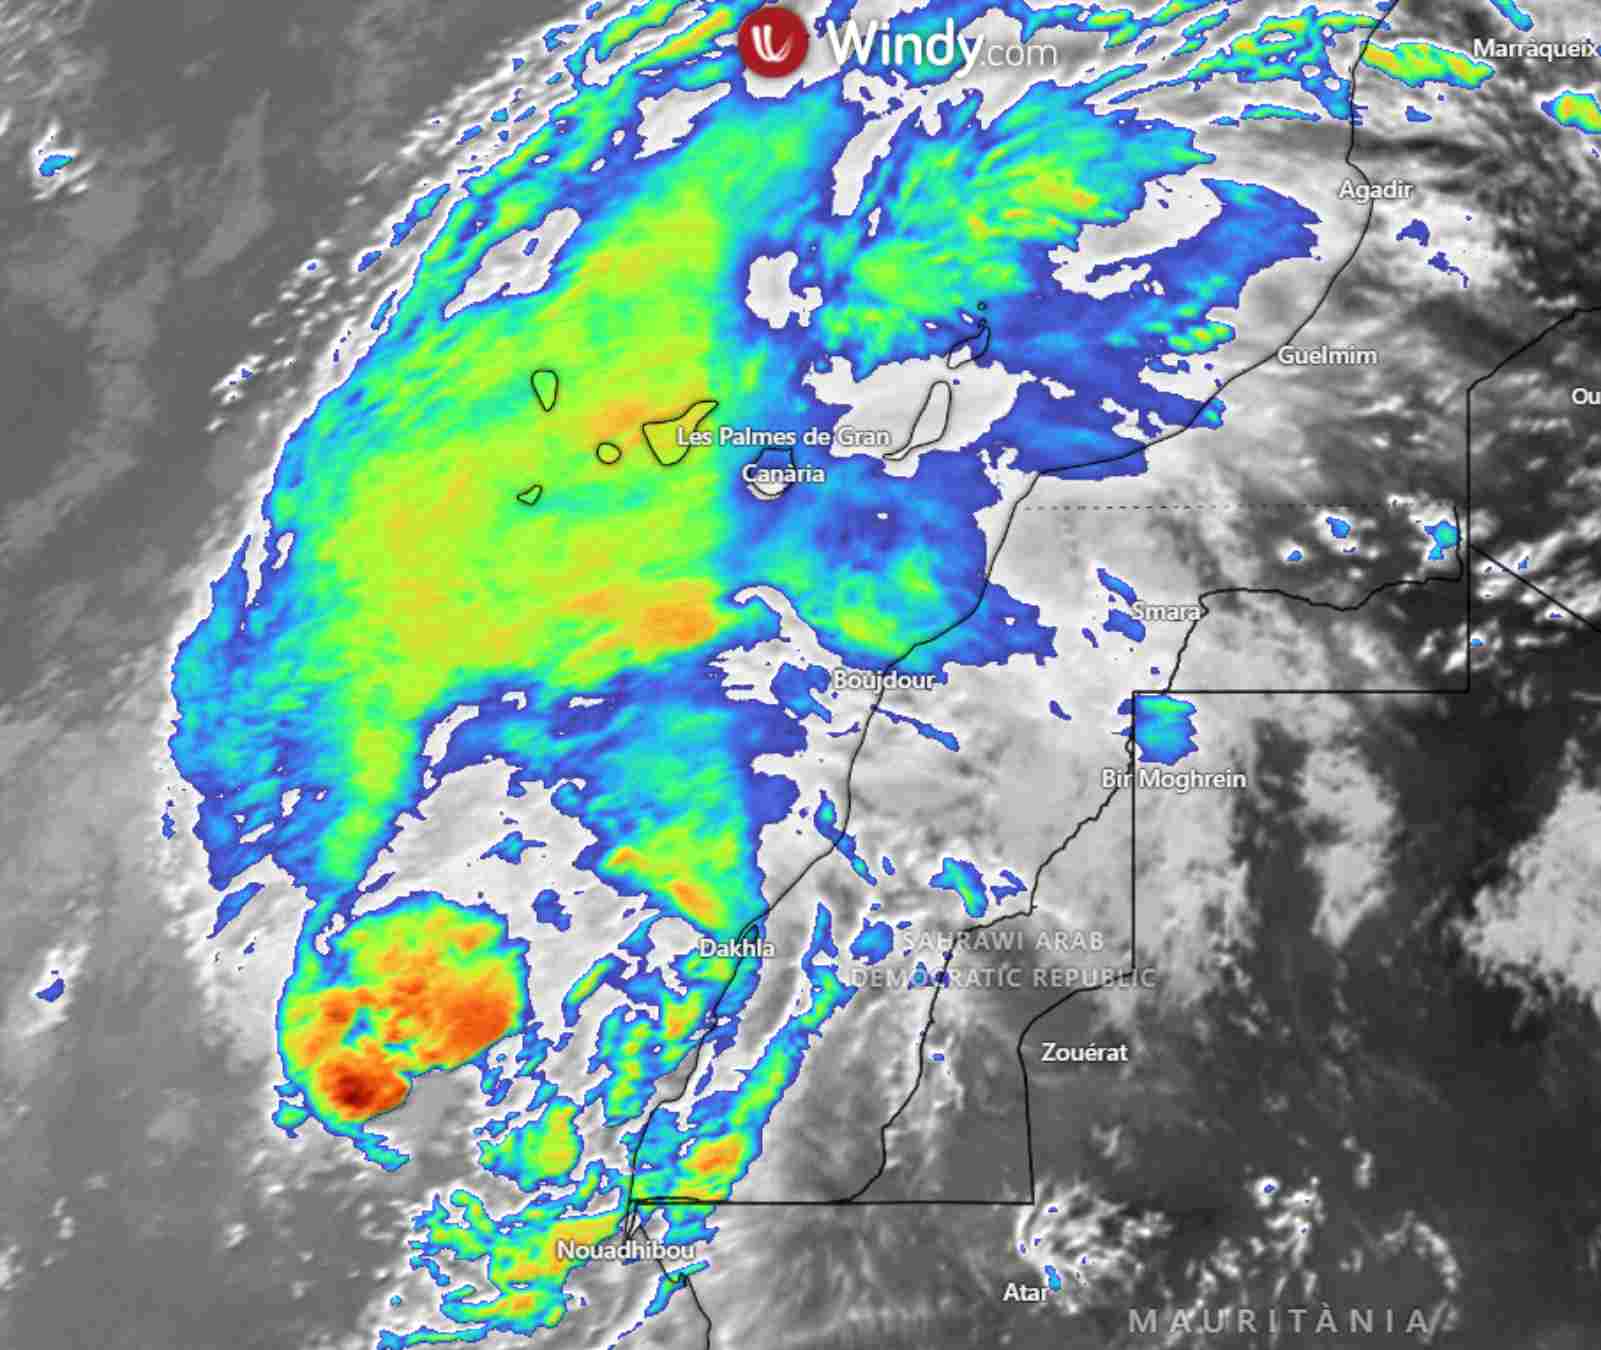 La tempesta tropical Hermine afectarà les Illes Canàries amb molta pluja / Imatge satèl·lit: WINDY